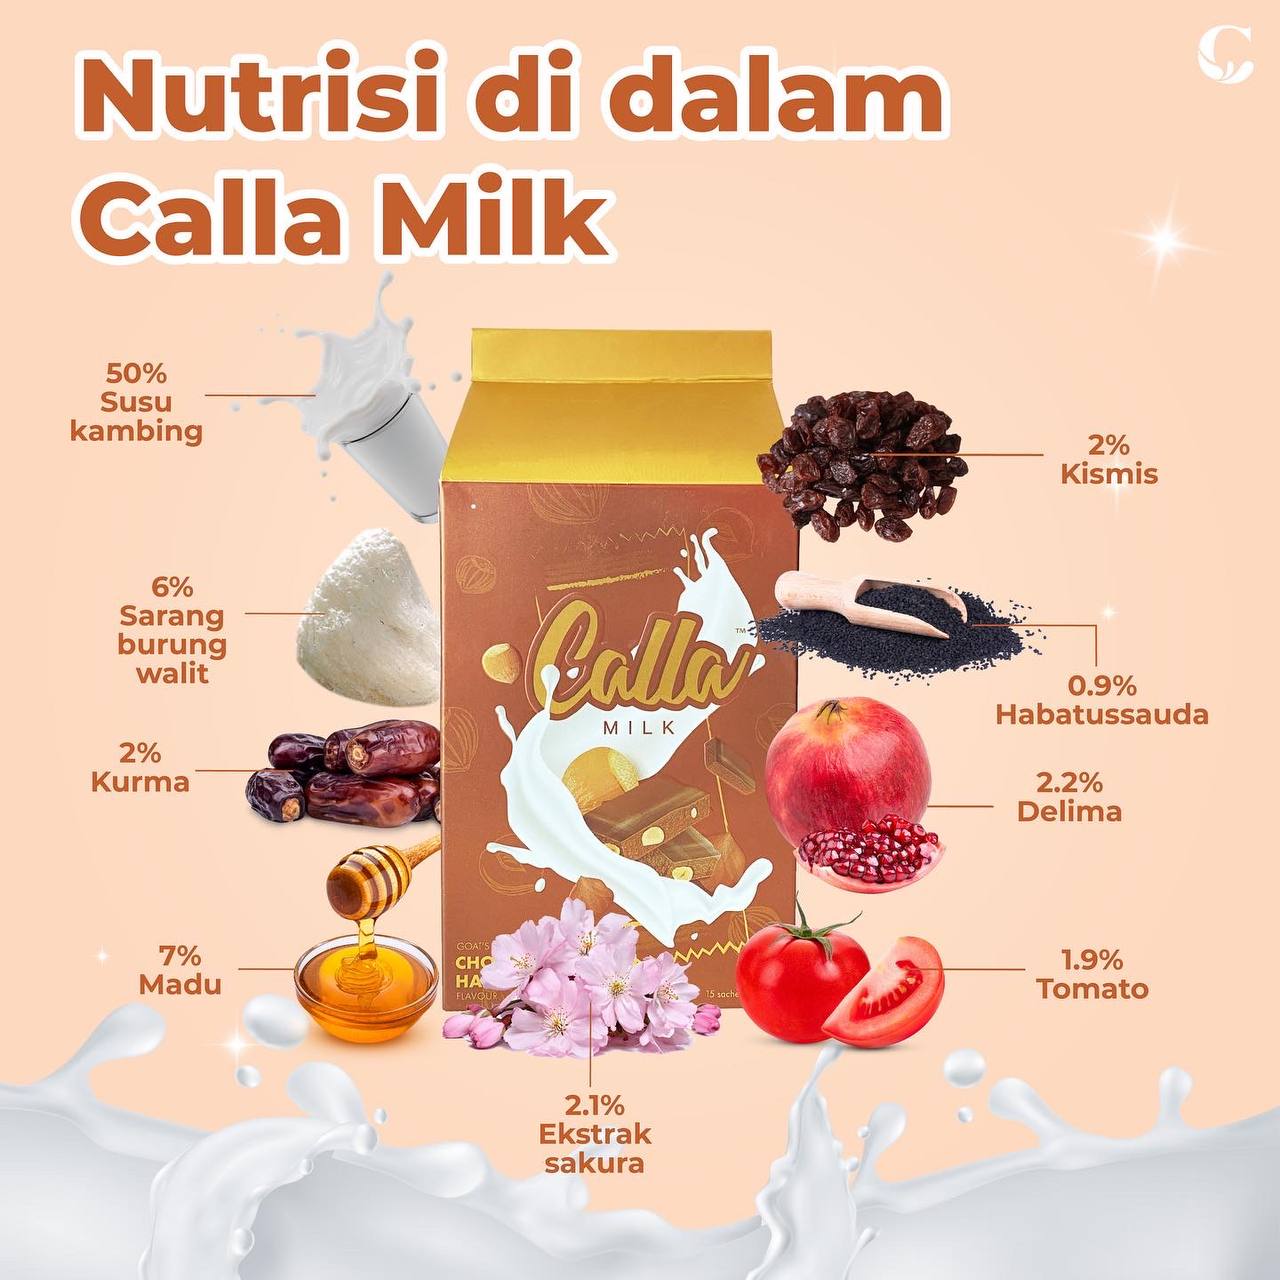 Calla Milk Flavoured Goat Milk (Chocolate Hazelnut)